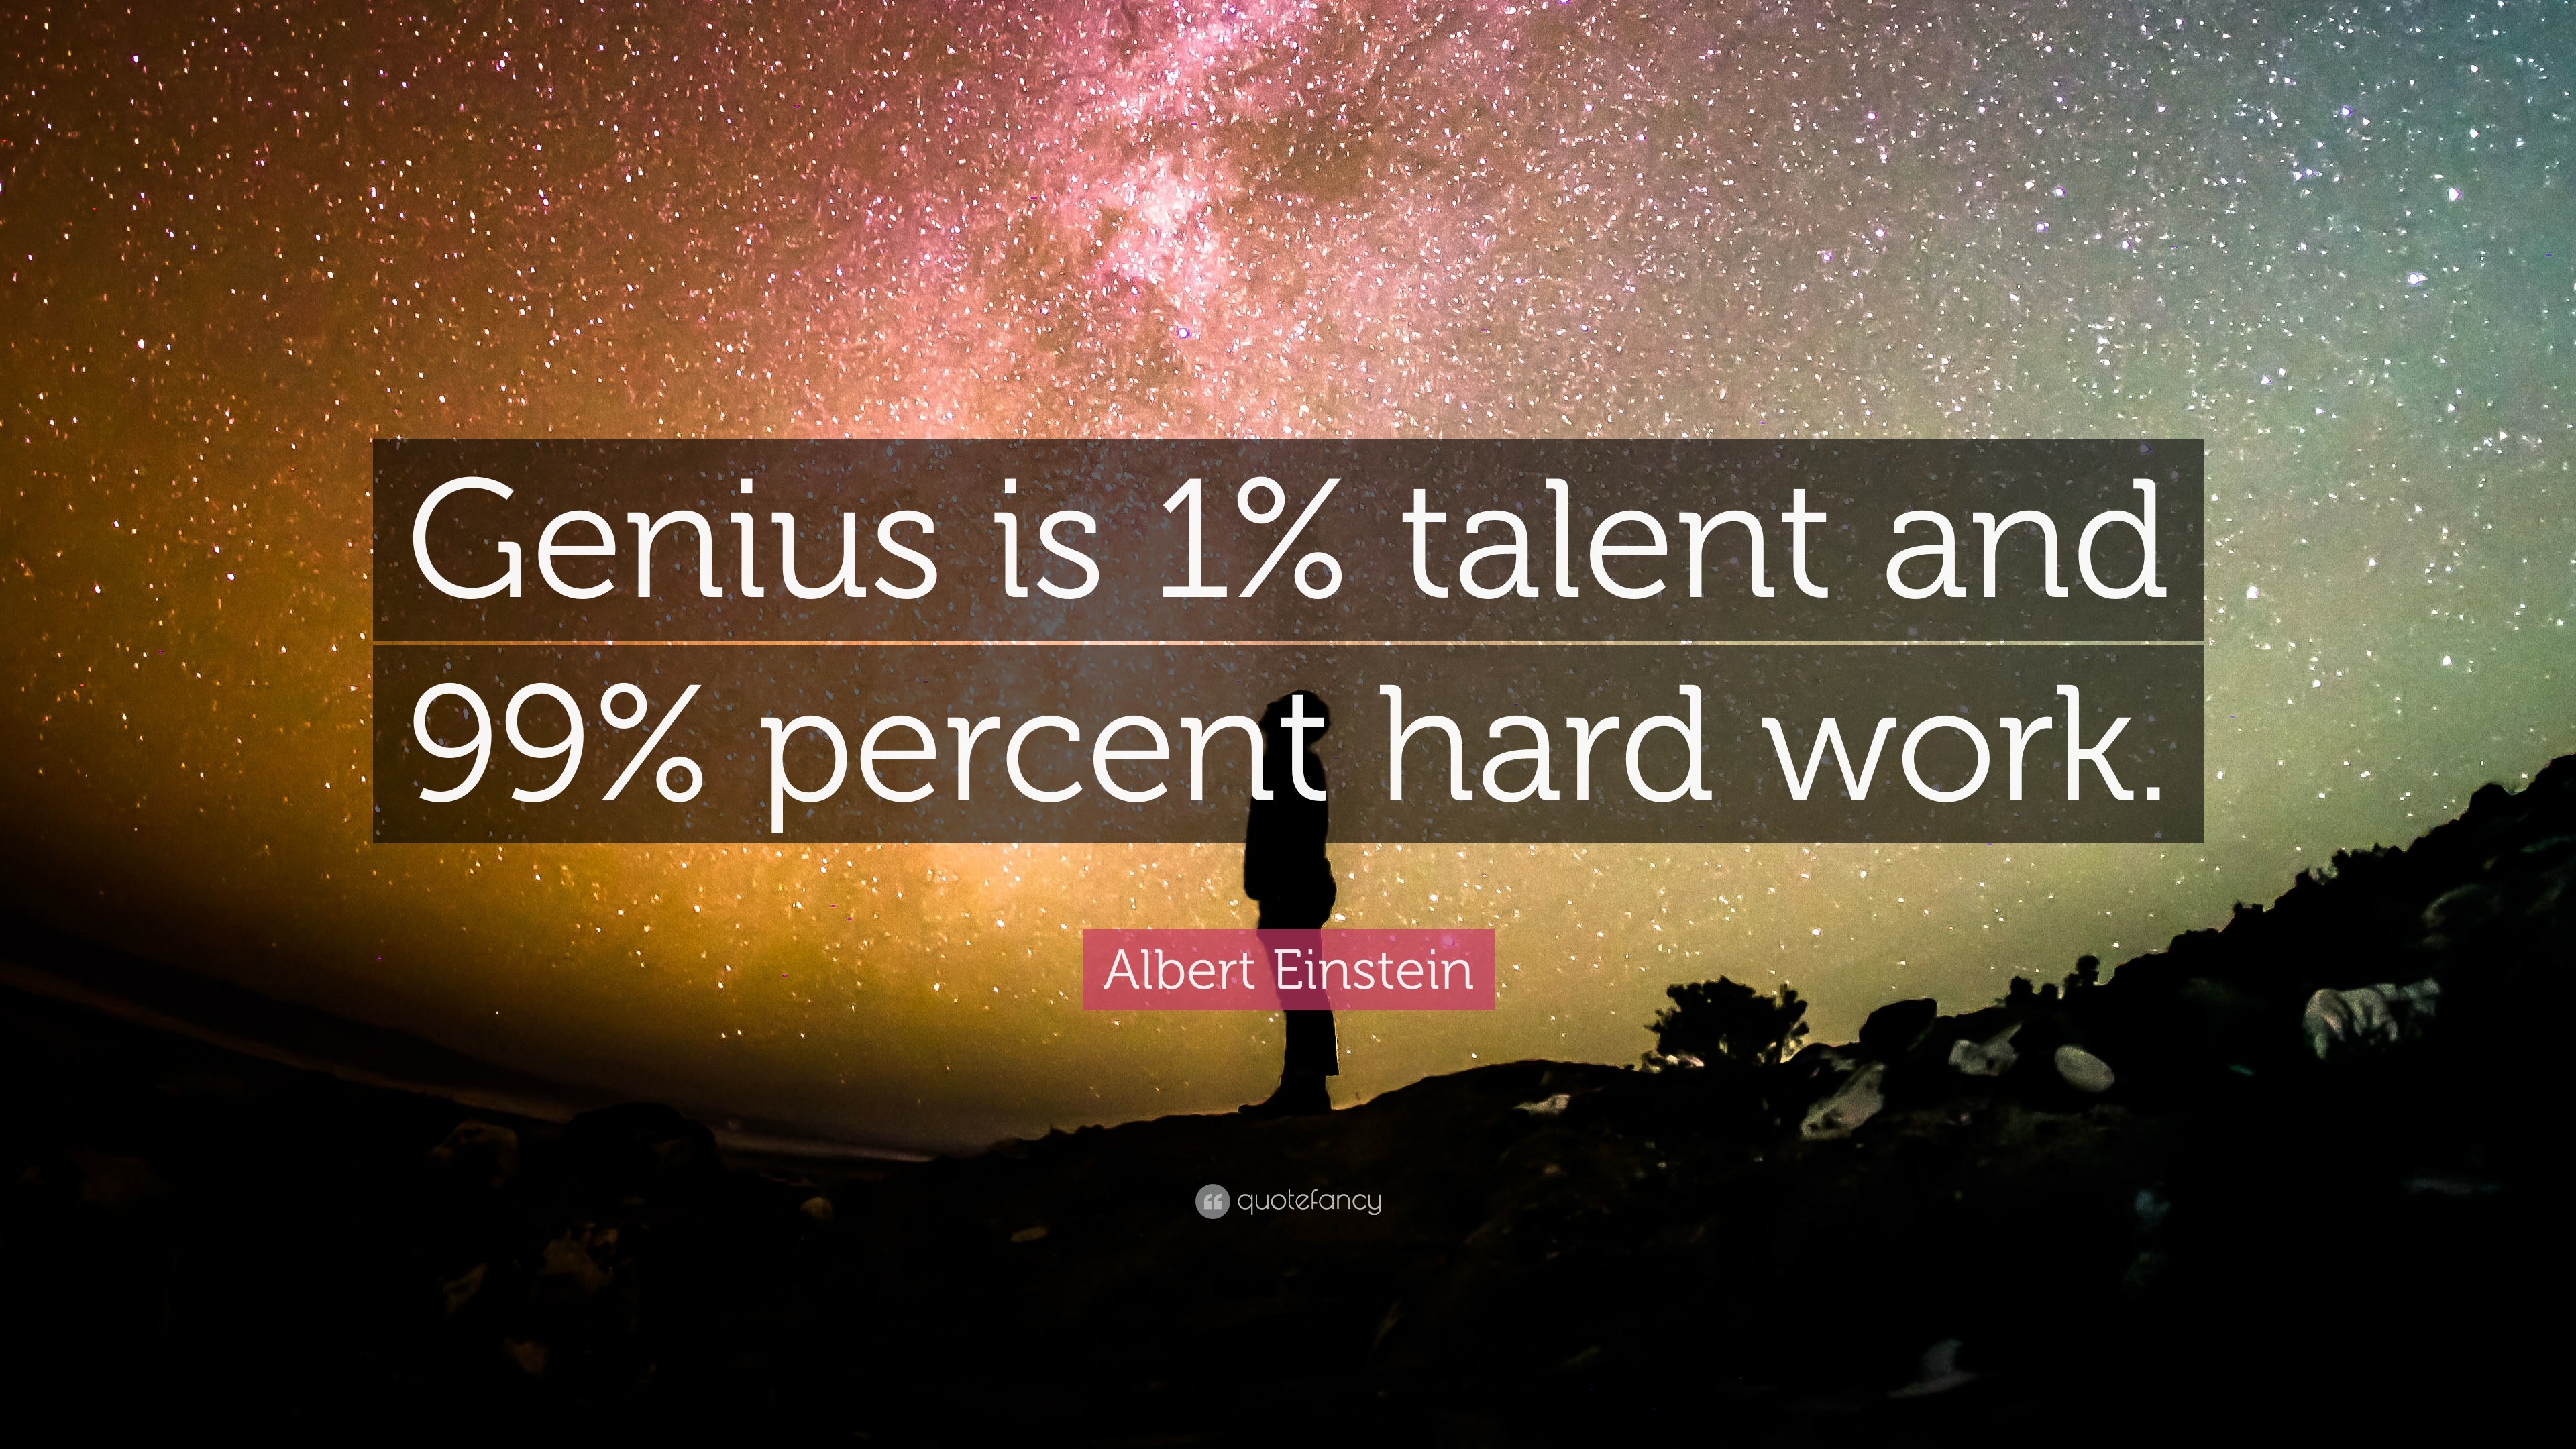 Albert Einstein Quote: “Genius is 1% talent and 99% percent hard work